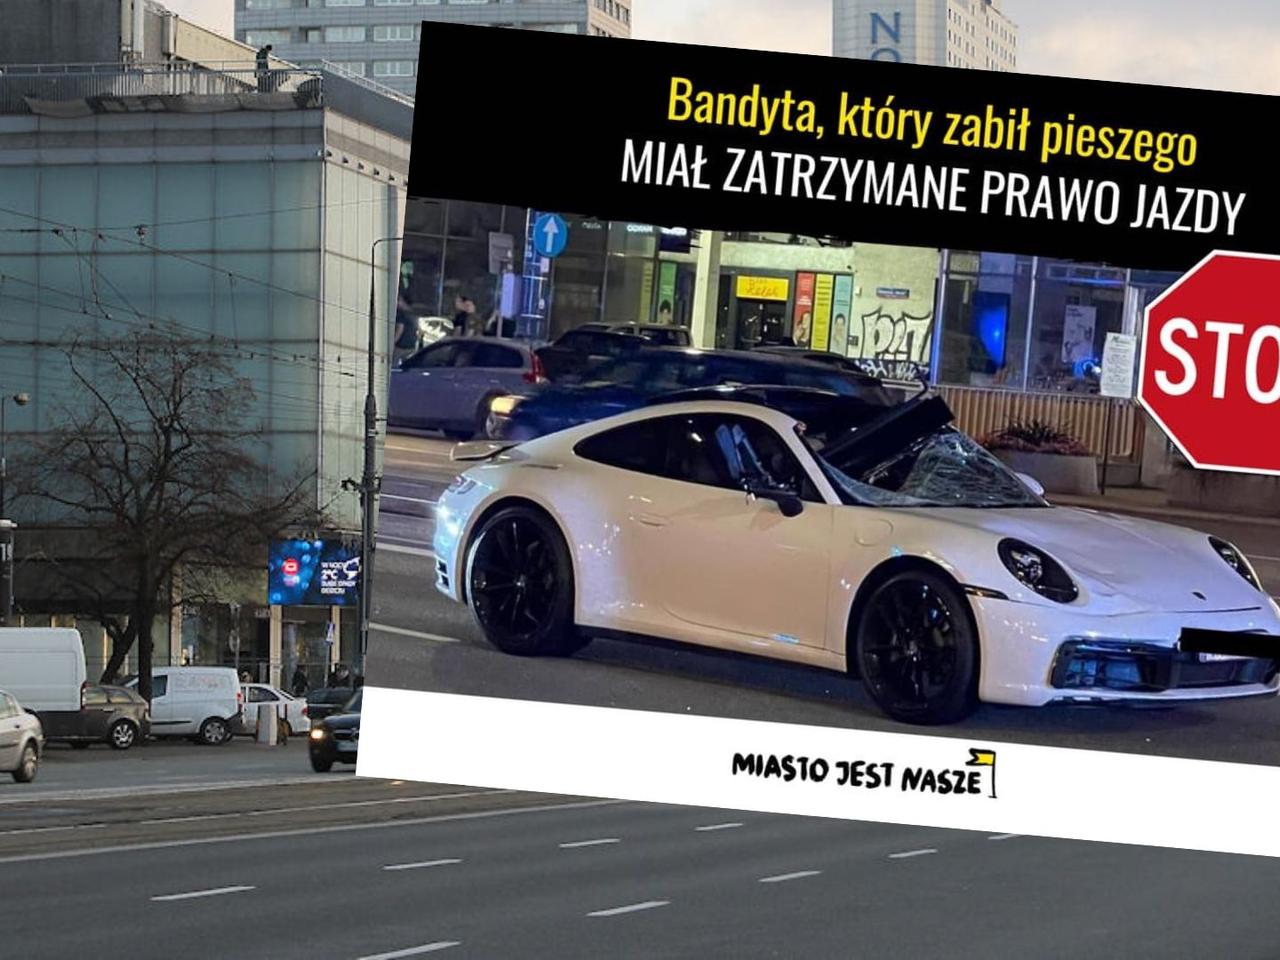 ZARZUTY dla kierowcy po wypadku na Marszałkowskiej - miał zatrzymane prawo jazdy!